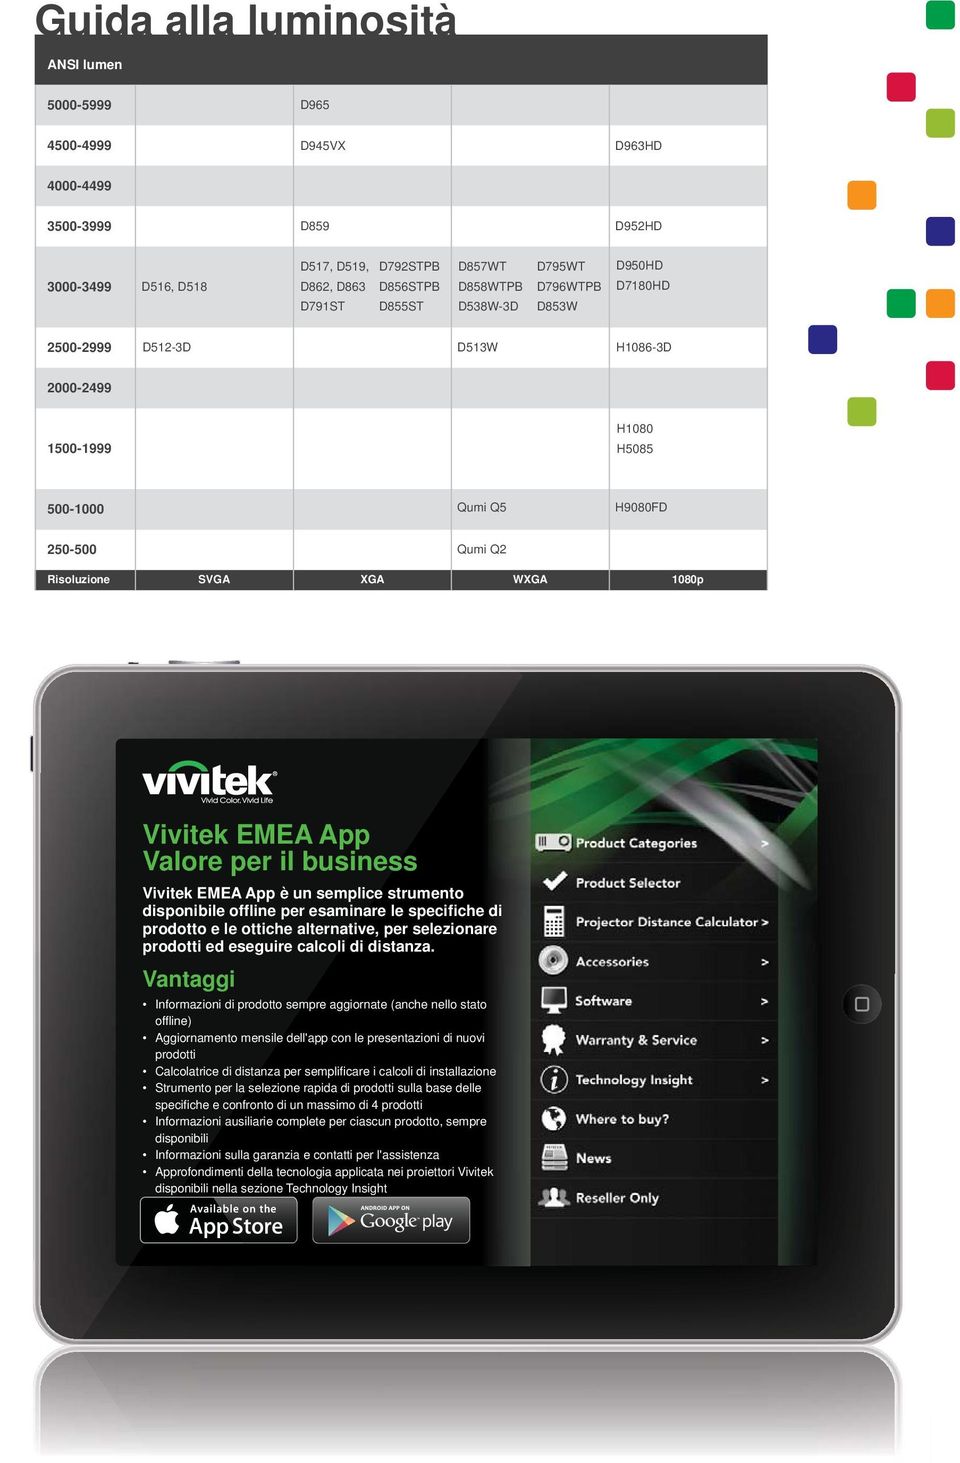 App Valore per il business Vivitek EMEA App è un semplice strumento disponibile offline per esaminare le specifiche di prodotto e le ottiche alternative, per selezionare prodotti ed eseguire calcoli